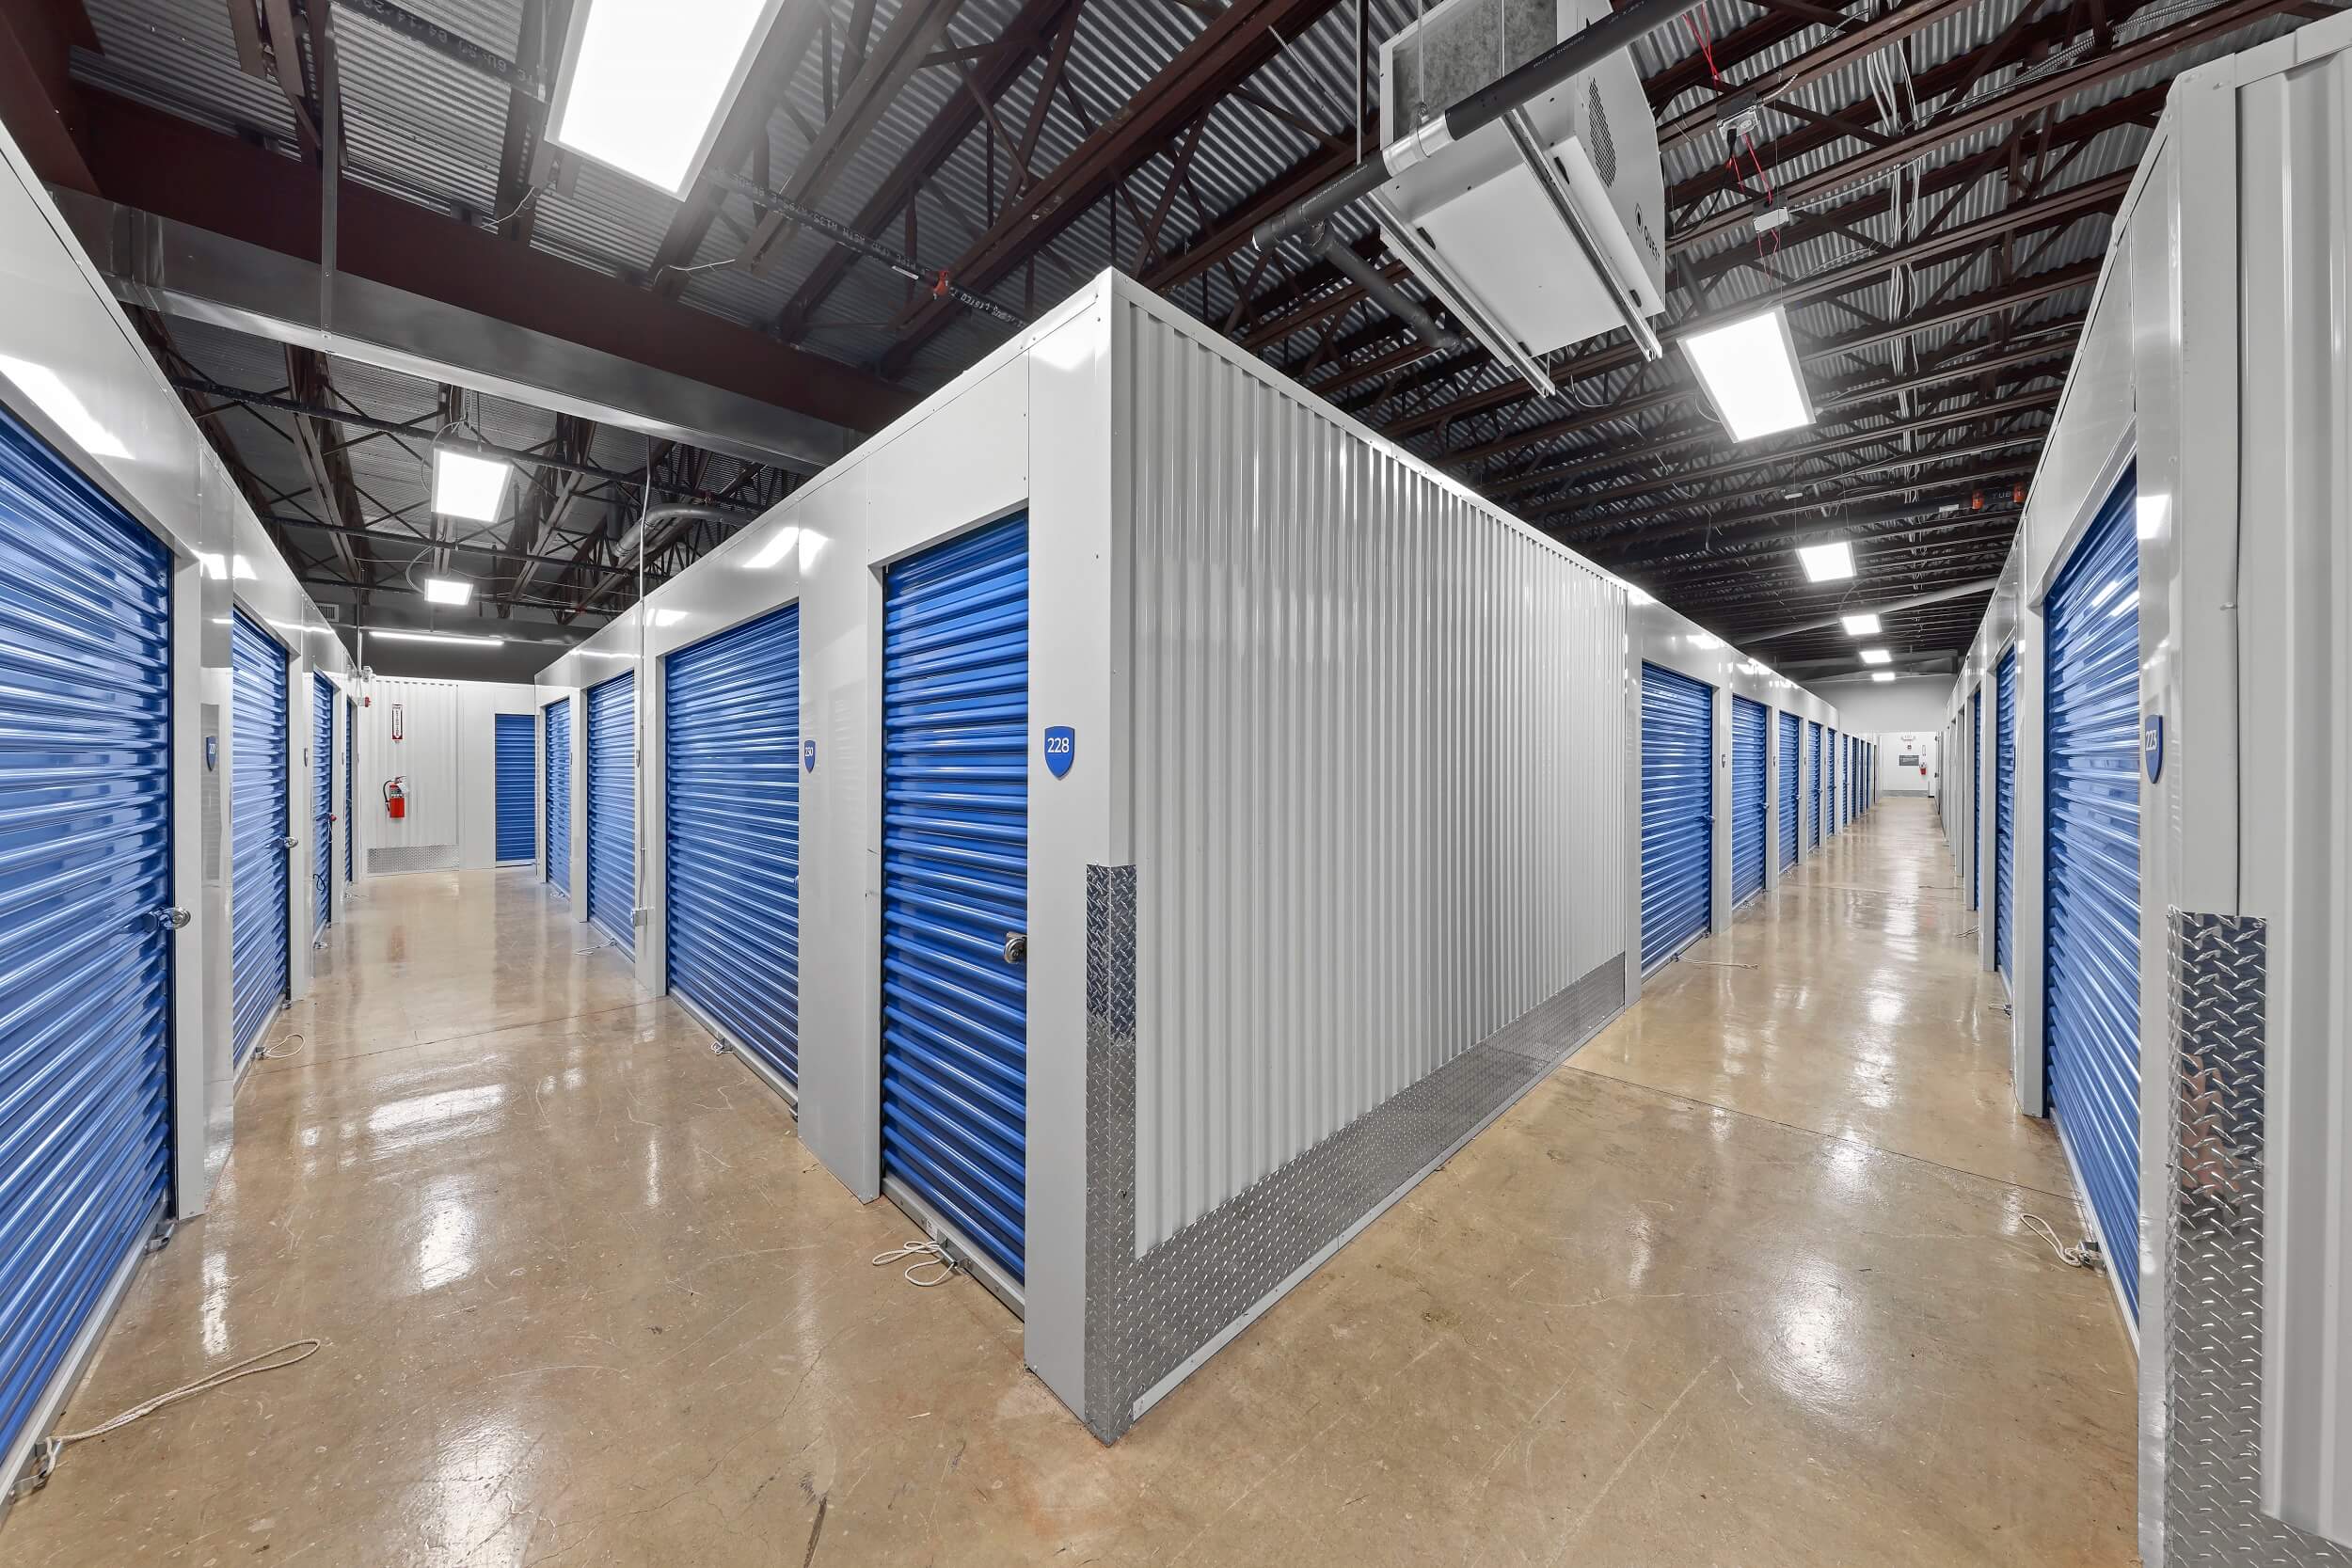 Hallway of Indoor Storage Units with Blue Doors